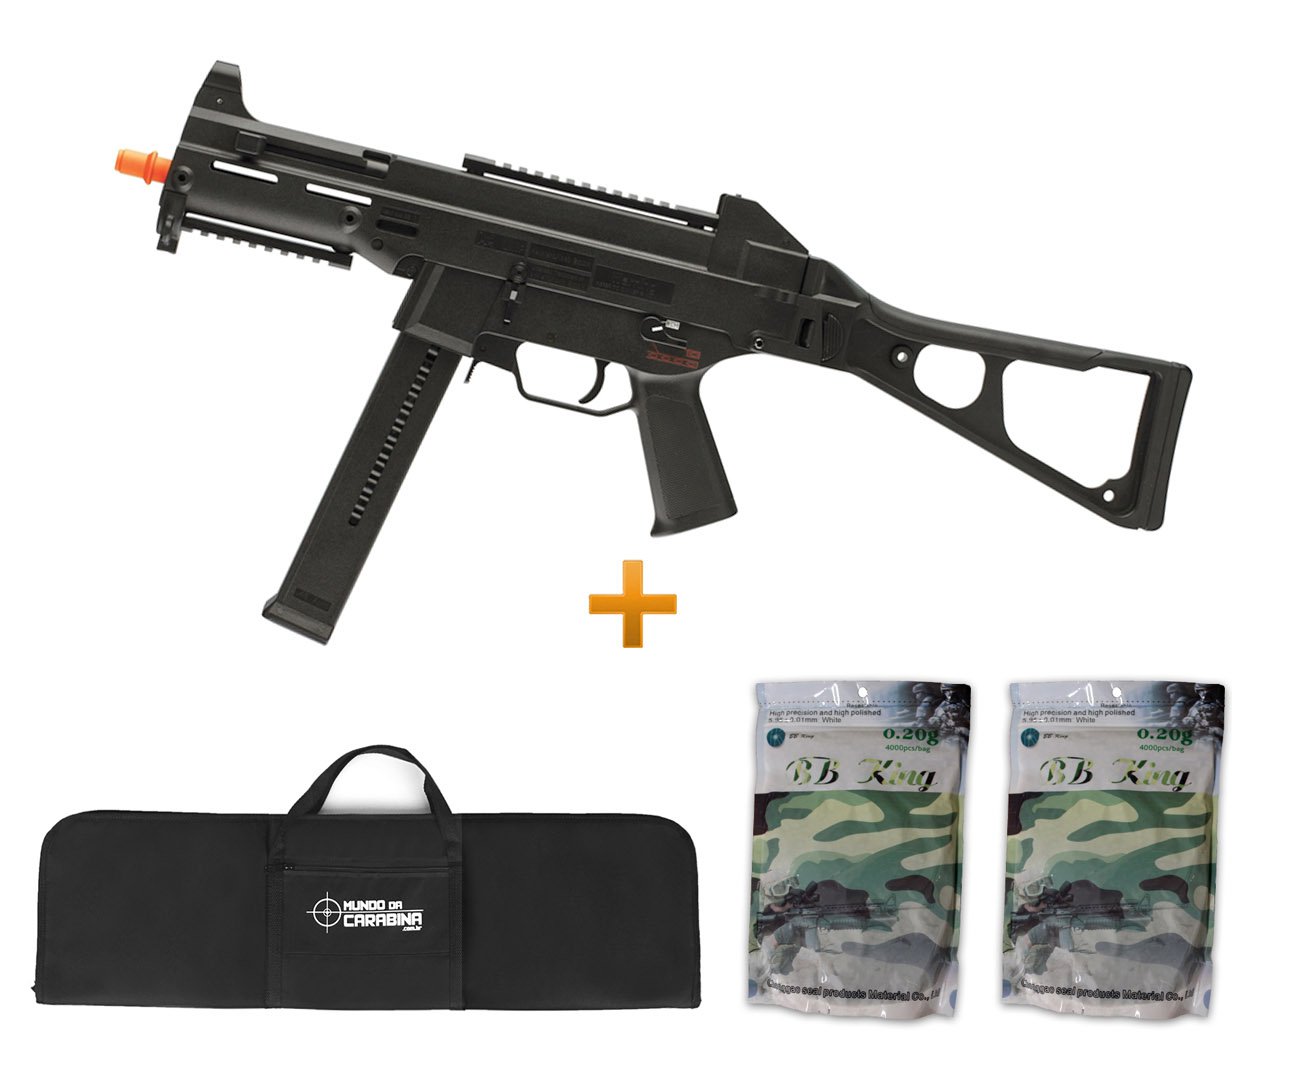 Rifle De Airsoft H&k Ump Aeg - Cal 6.0mm + Capa + 8000 Bbs 0,20g - Umarex